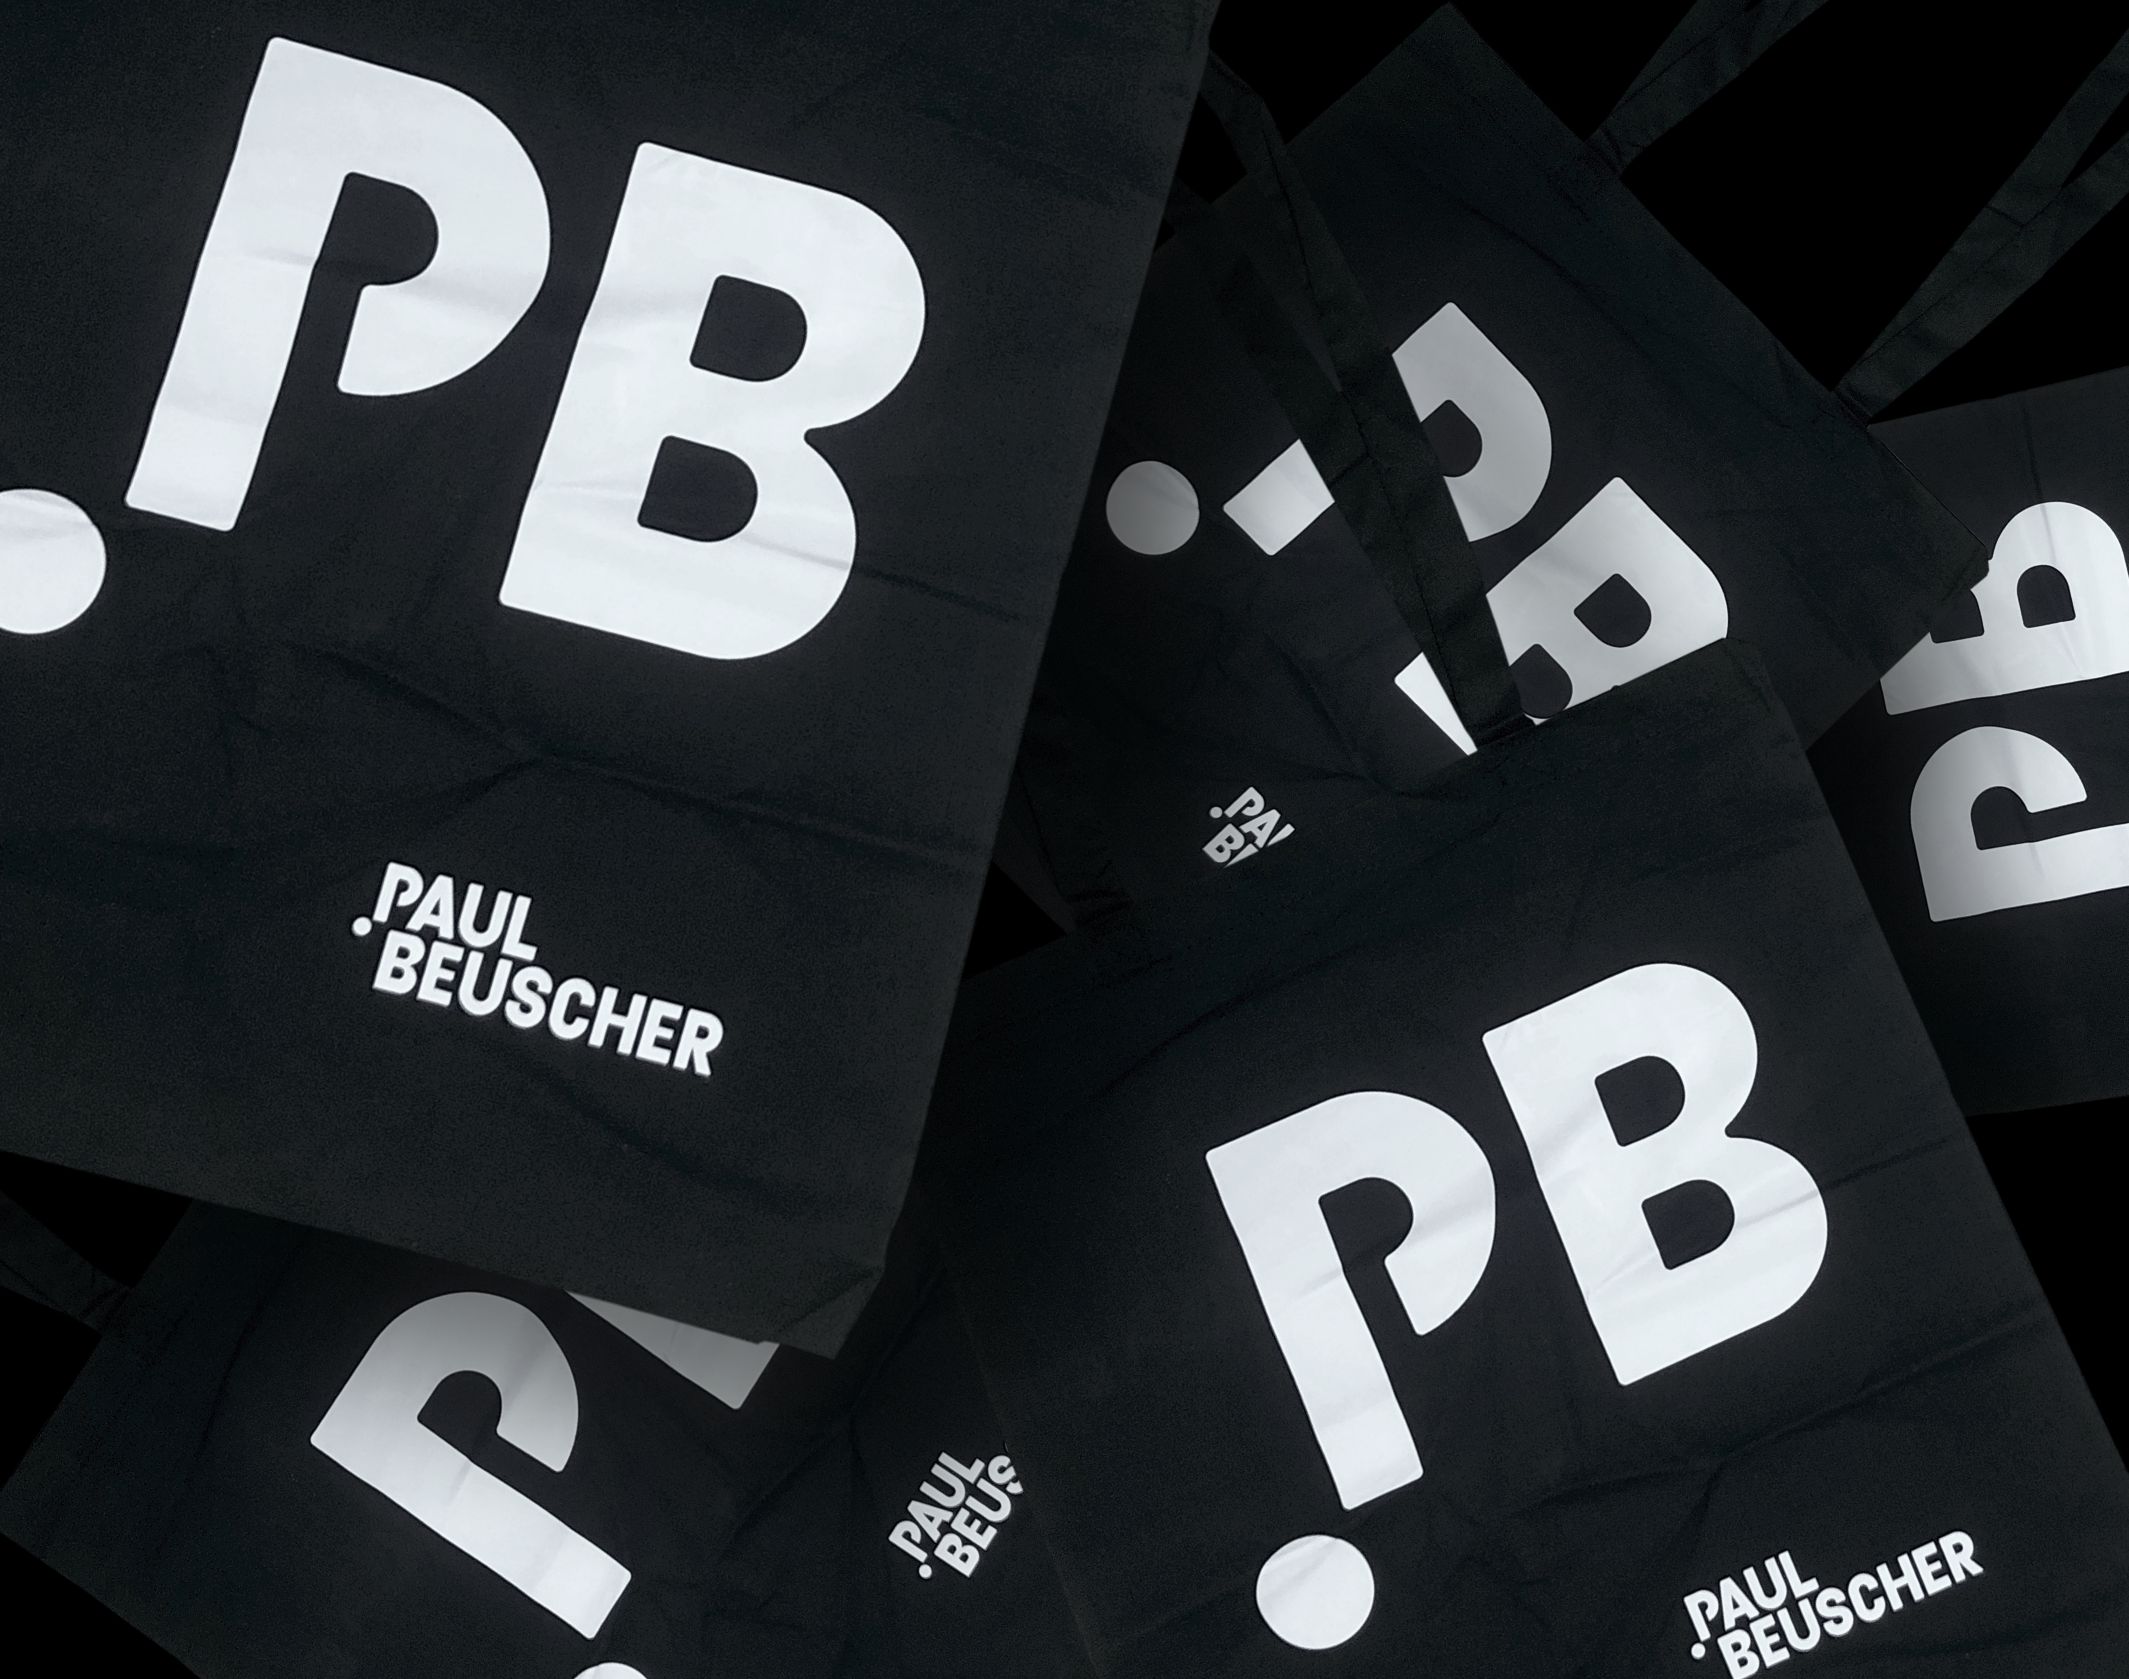 Paul Beuscher乐器店品牌视觉设计